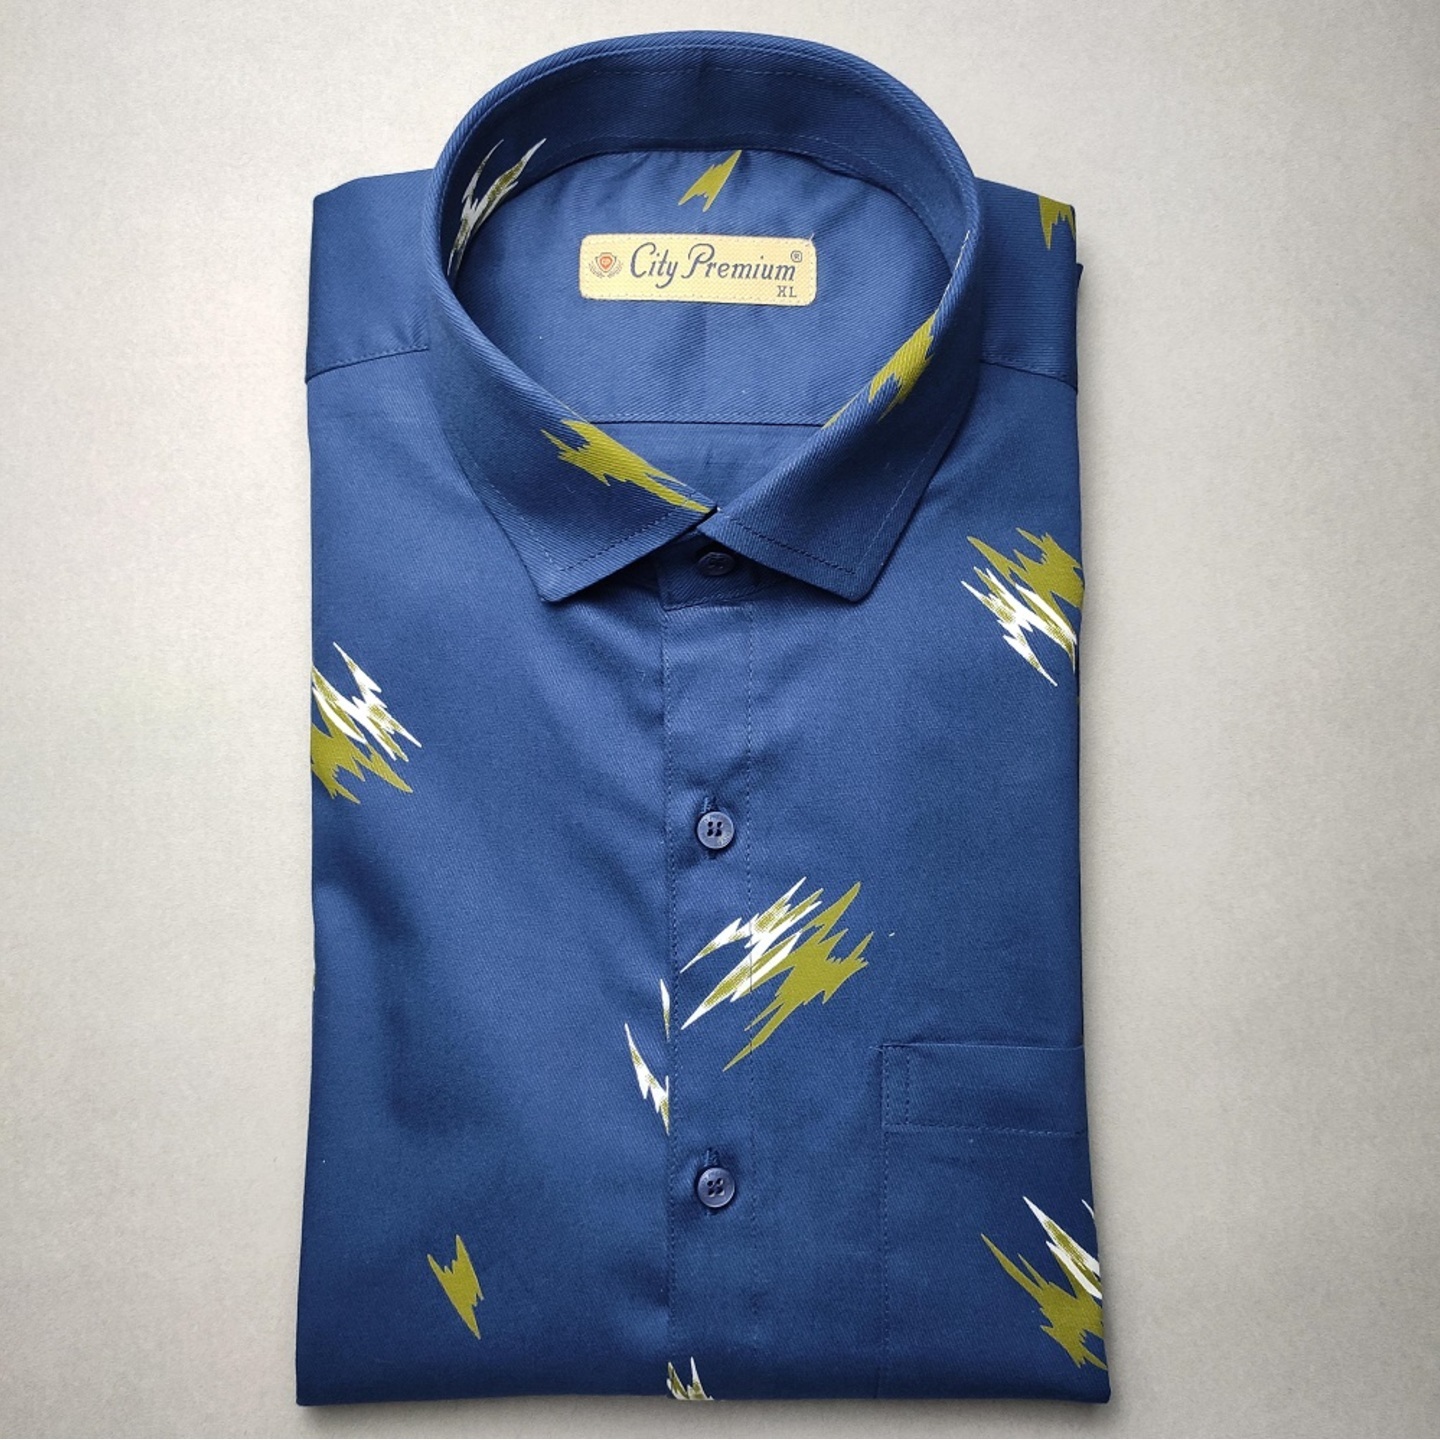 City Premium Men Navy Blue Printed Regular Fit Casual Shirt